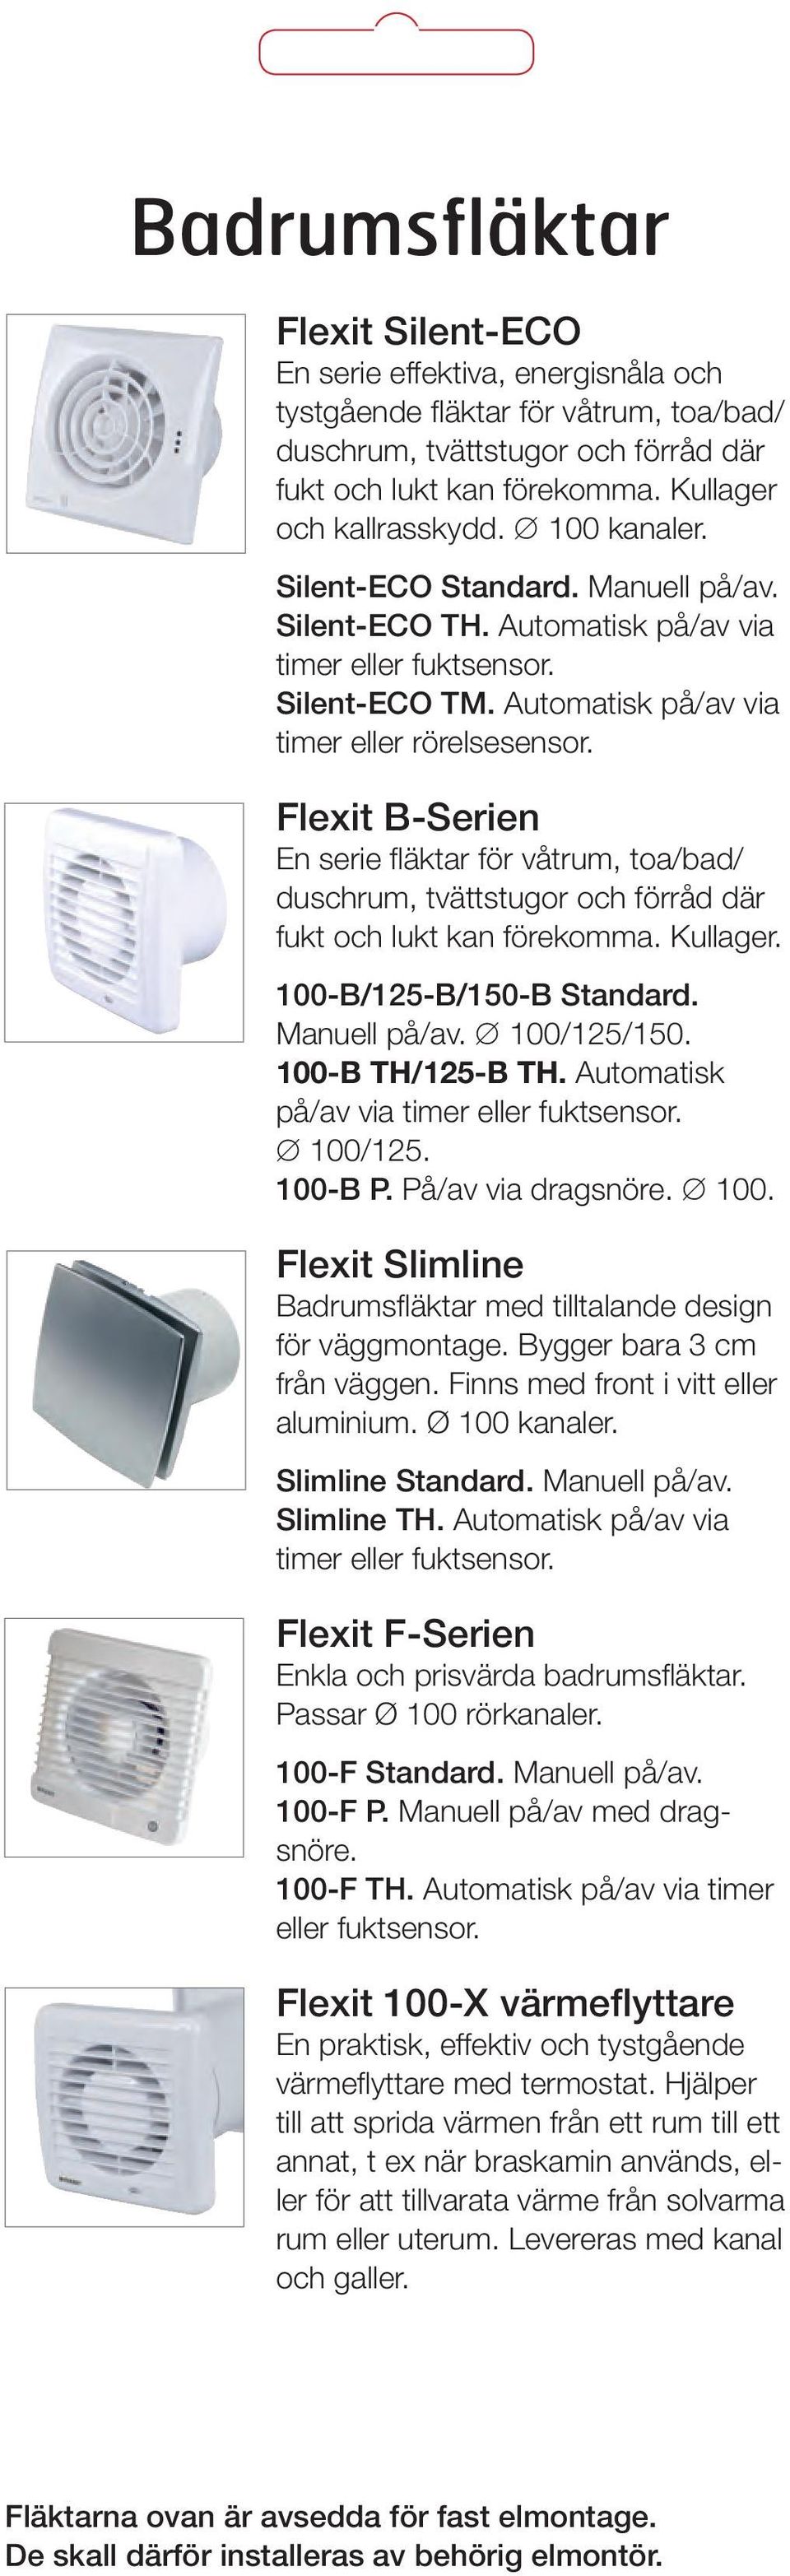 Flexit B-Serien En serie fläktar för våtrum, toa/bad/ duschrum, tvättstugor och förråd där fukt och lukt kan förekomma. Kullager. 100-B/125-B/150-B Standard. Manuell på/av. 100/125/150.